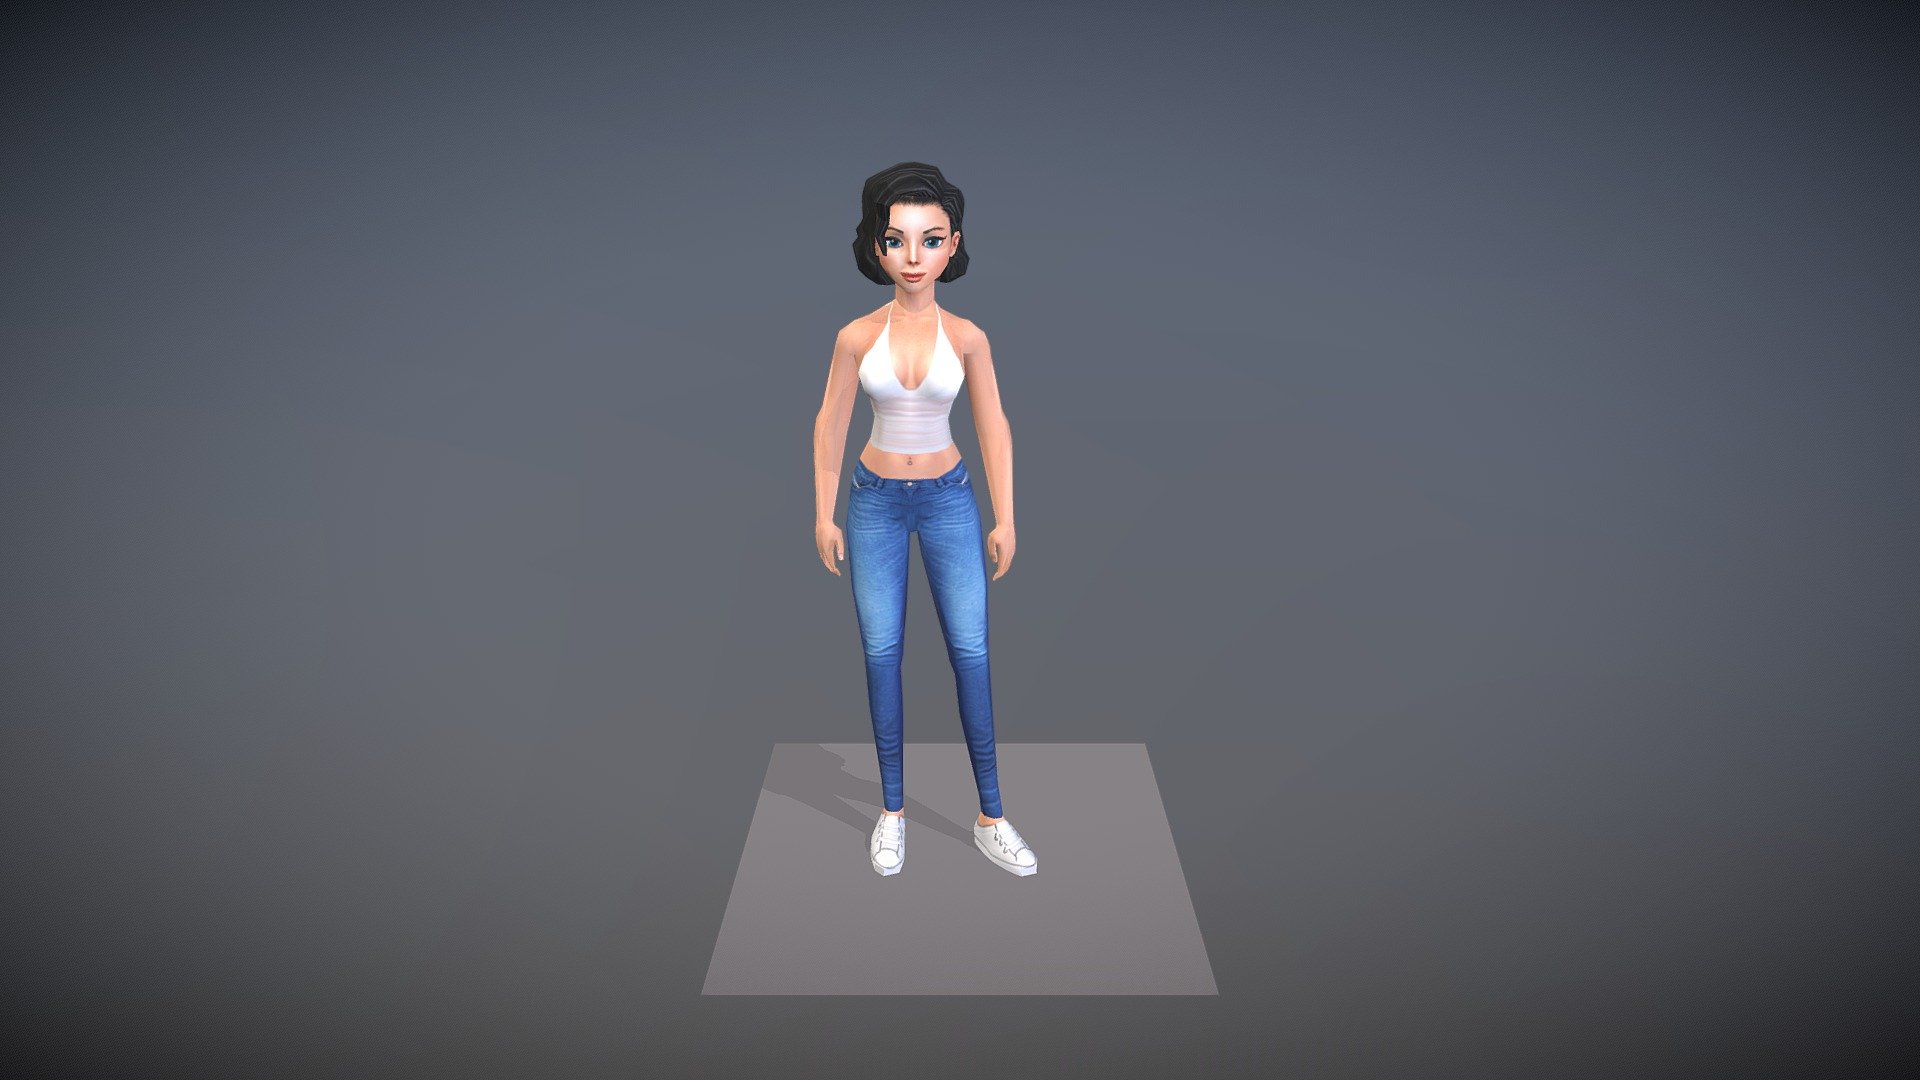 Female Avatar03 - 3D model by animulator 3d model